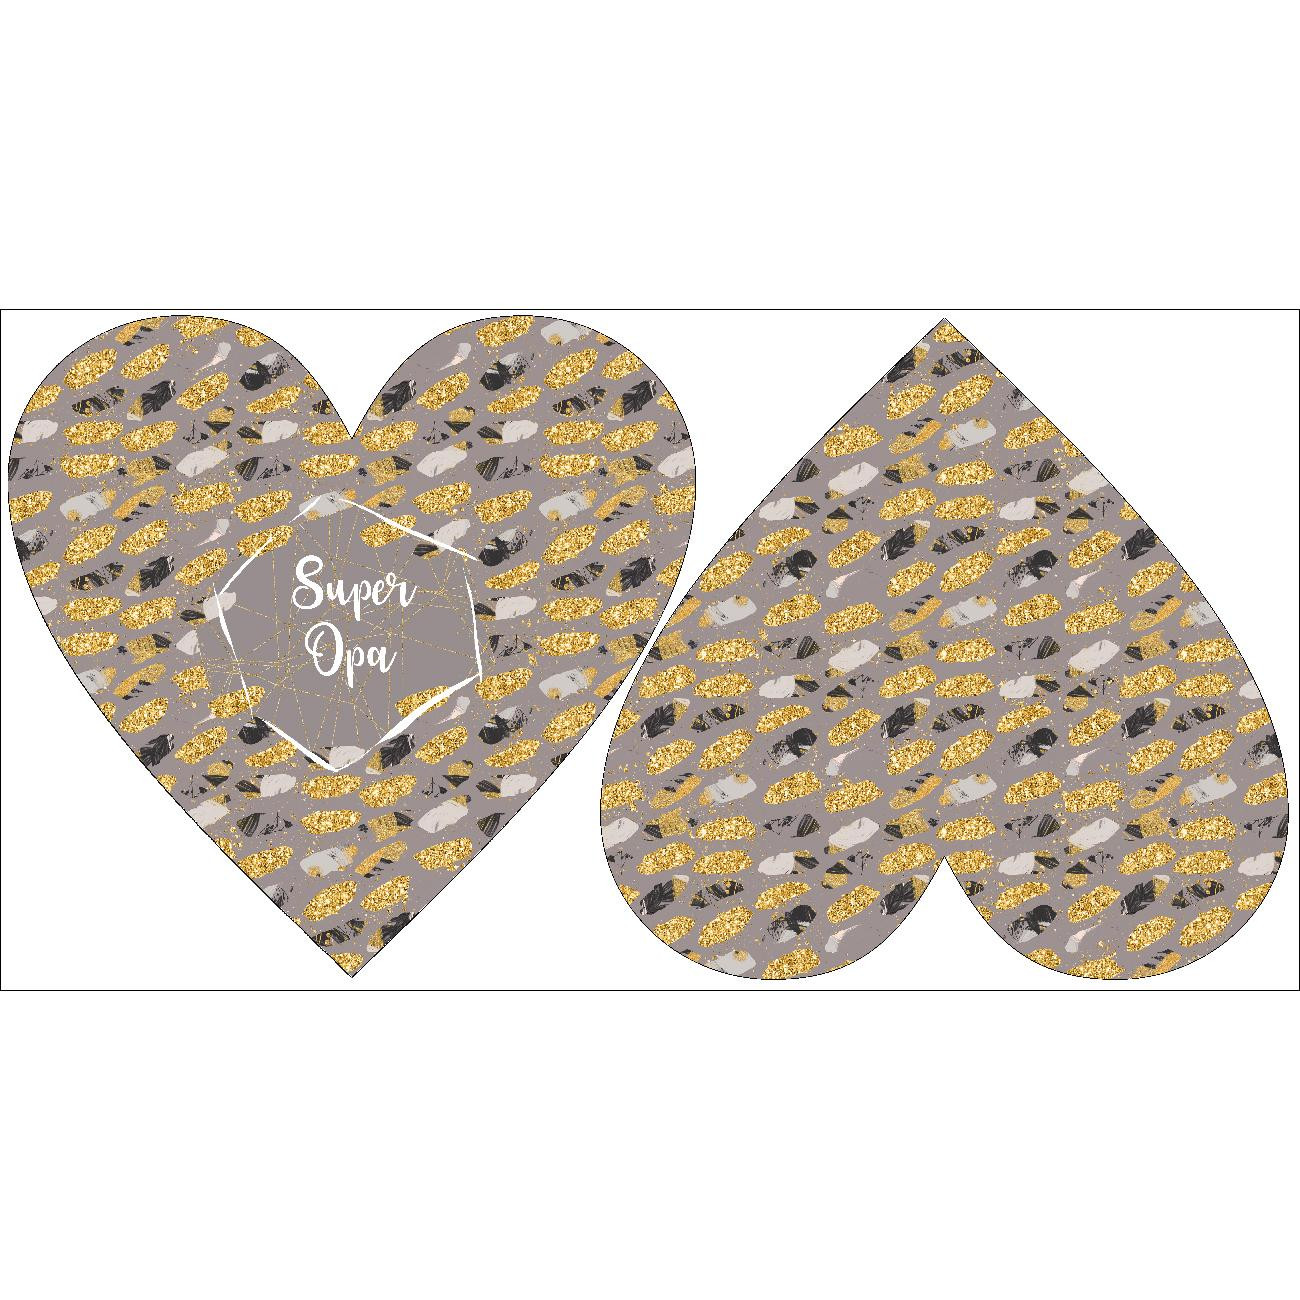 DECORATIVE PILLOW HEART - Super Opa / FLOWER BOUQUET  pat. 6 (gold)